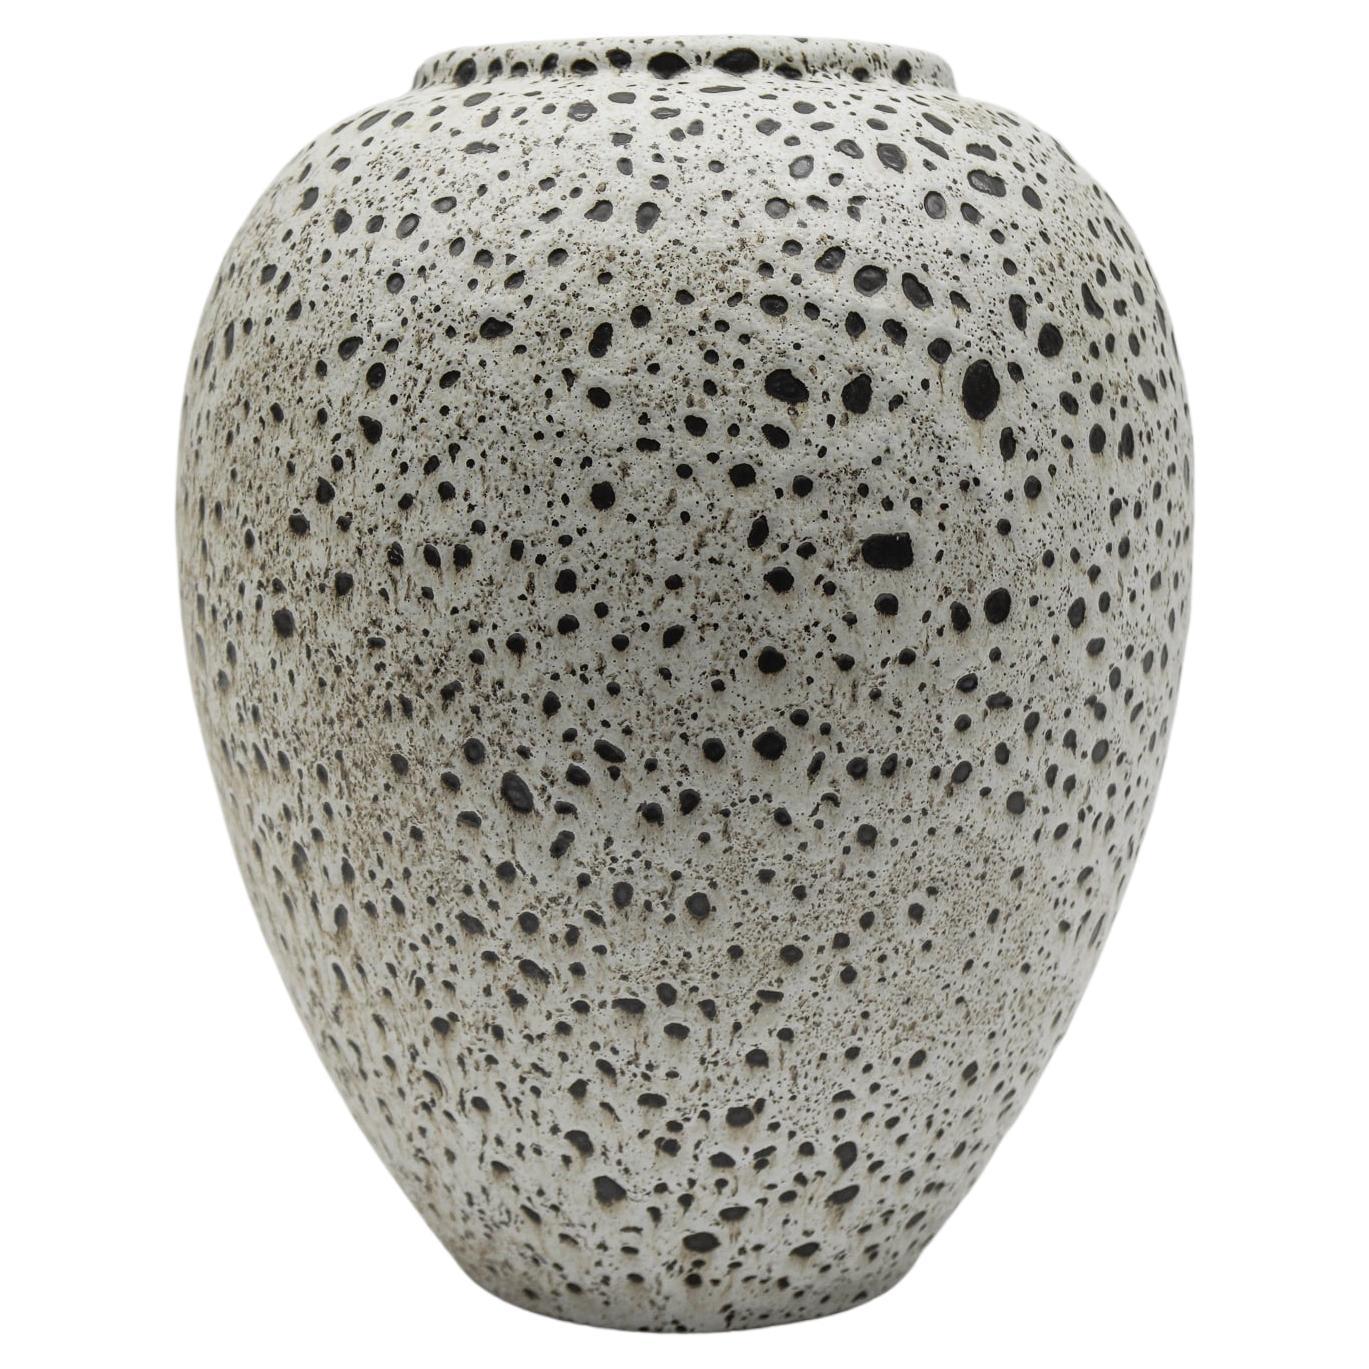 Lovely White & Black Studio Ceramic Vase by Wilhelm & Elly Kuch, 1960s, Germany